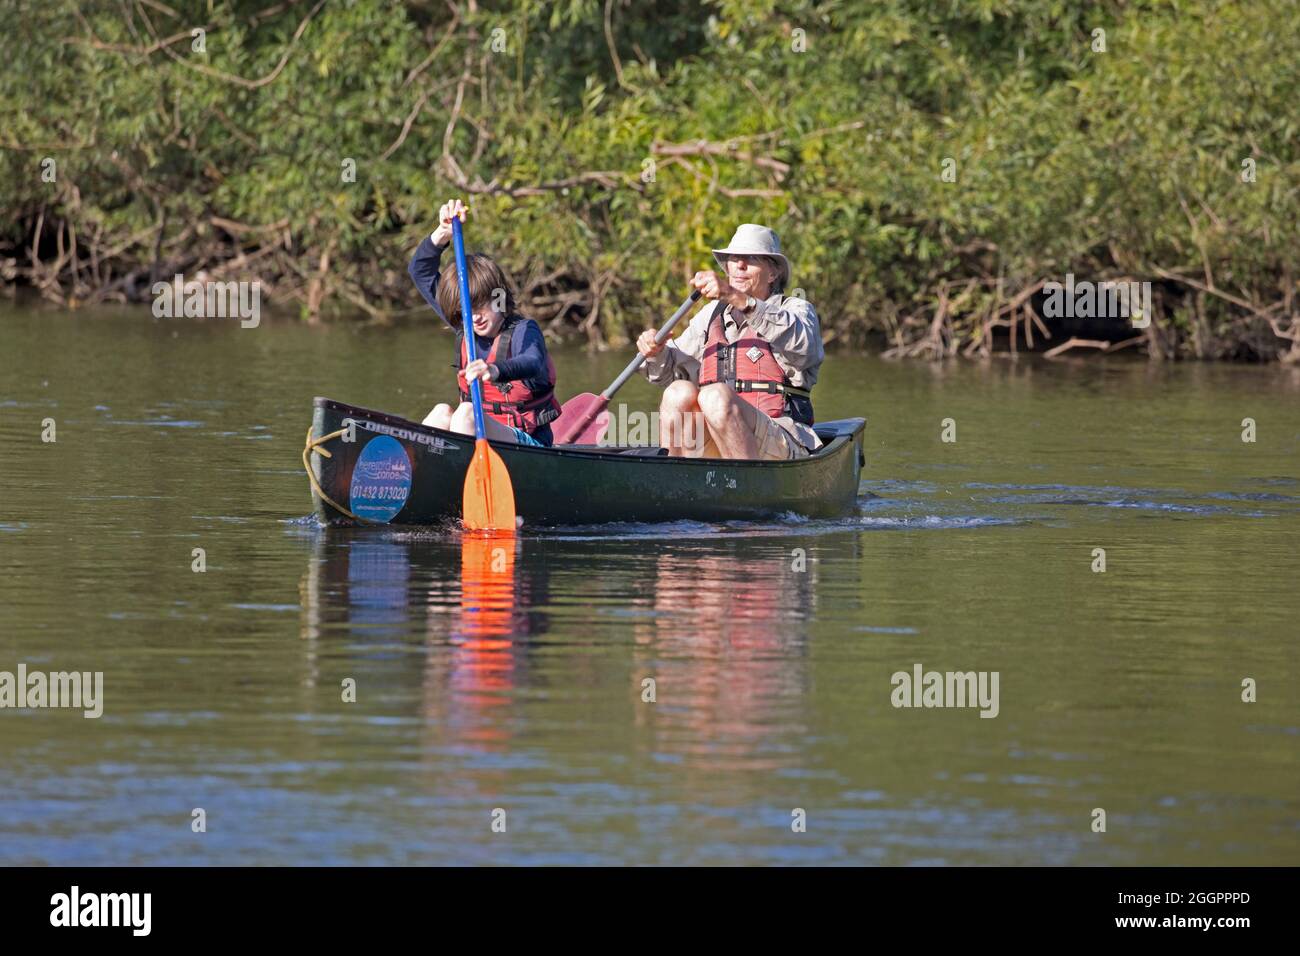 Homme âgé et jeune garçon pagayant le canoë canadien sur la rivière Wye Hoarwithy, Royaume-Uni Banque D'Images